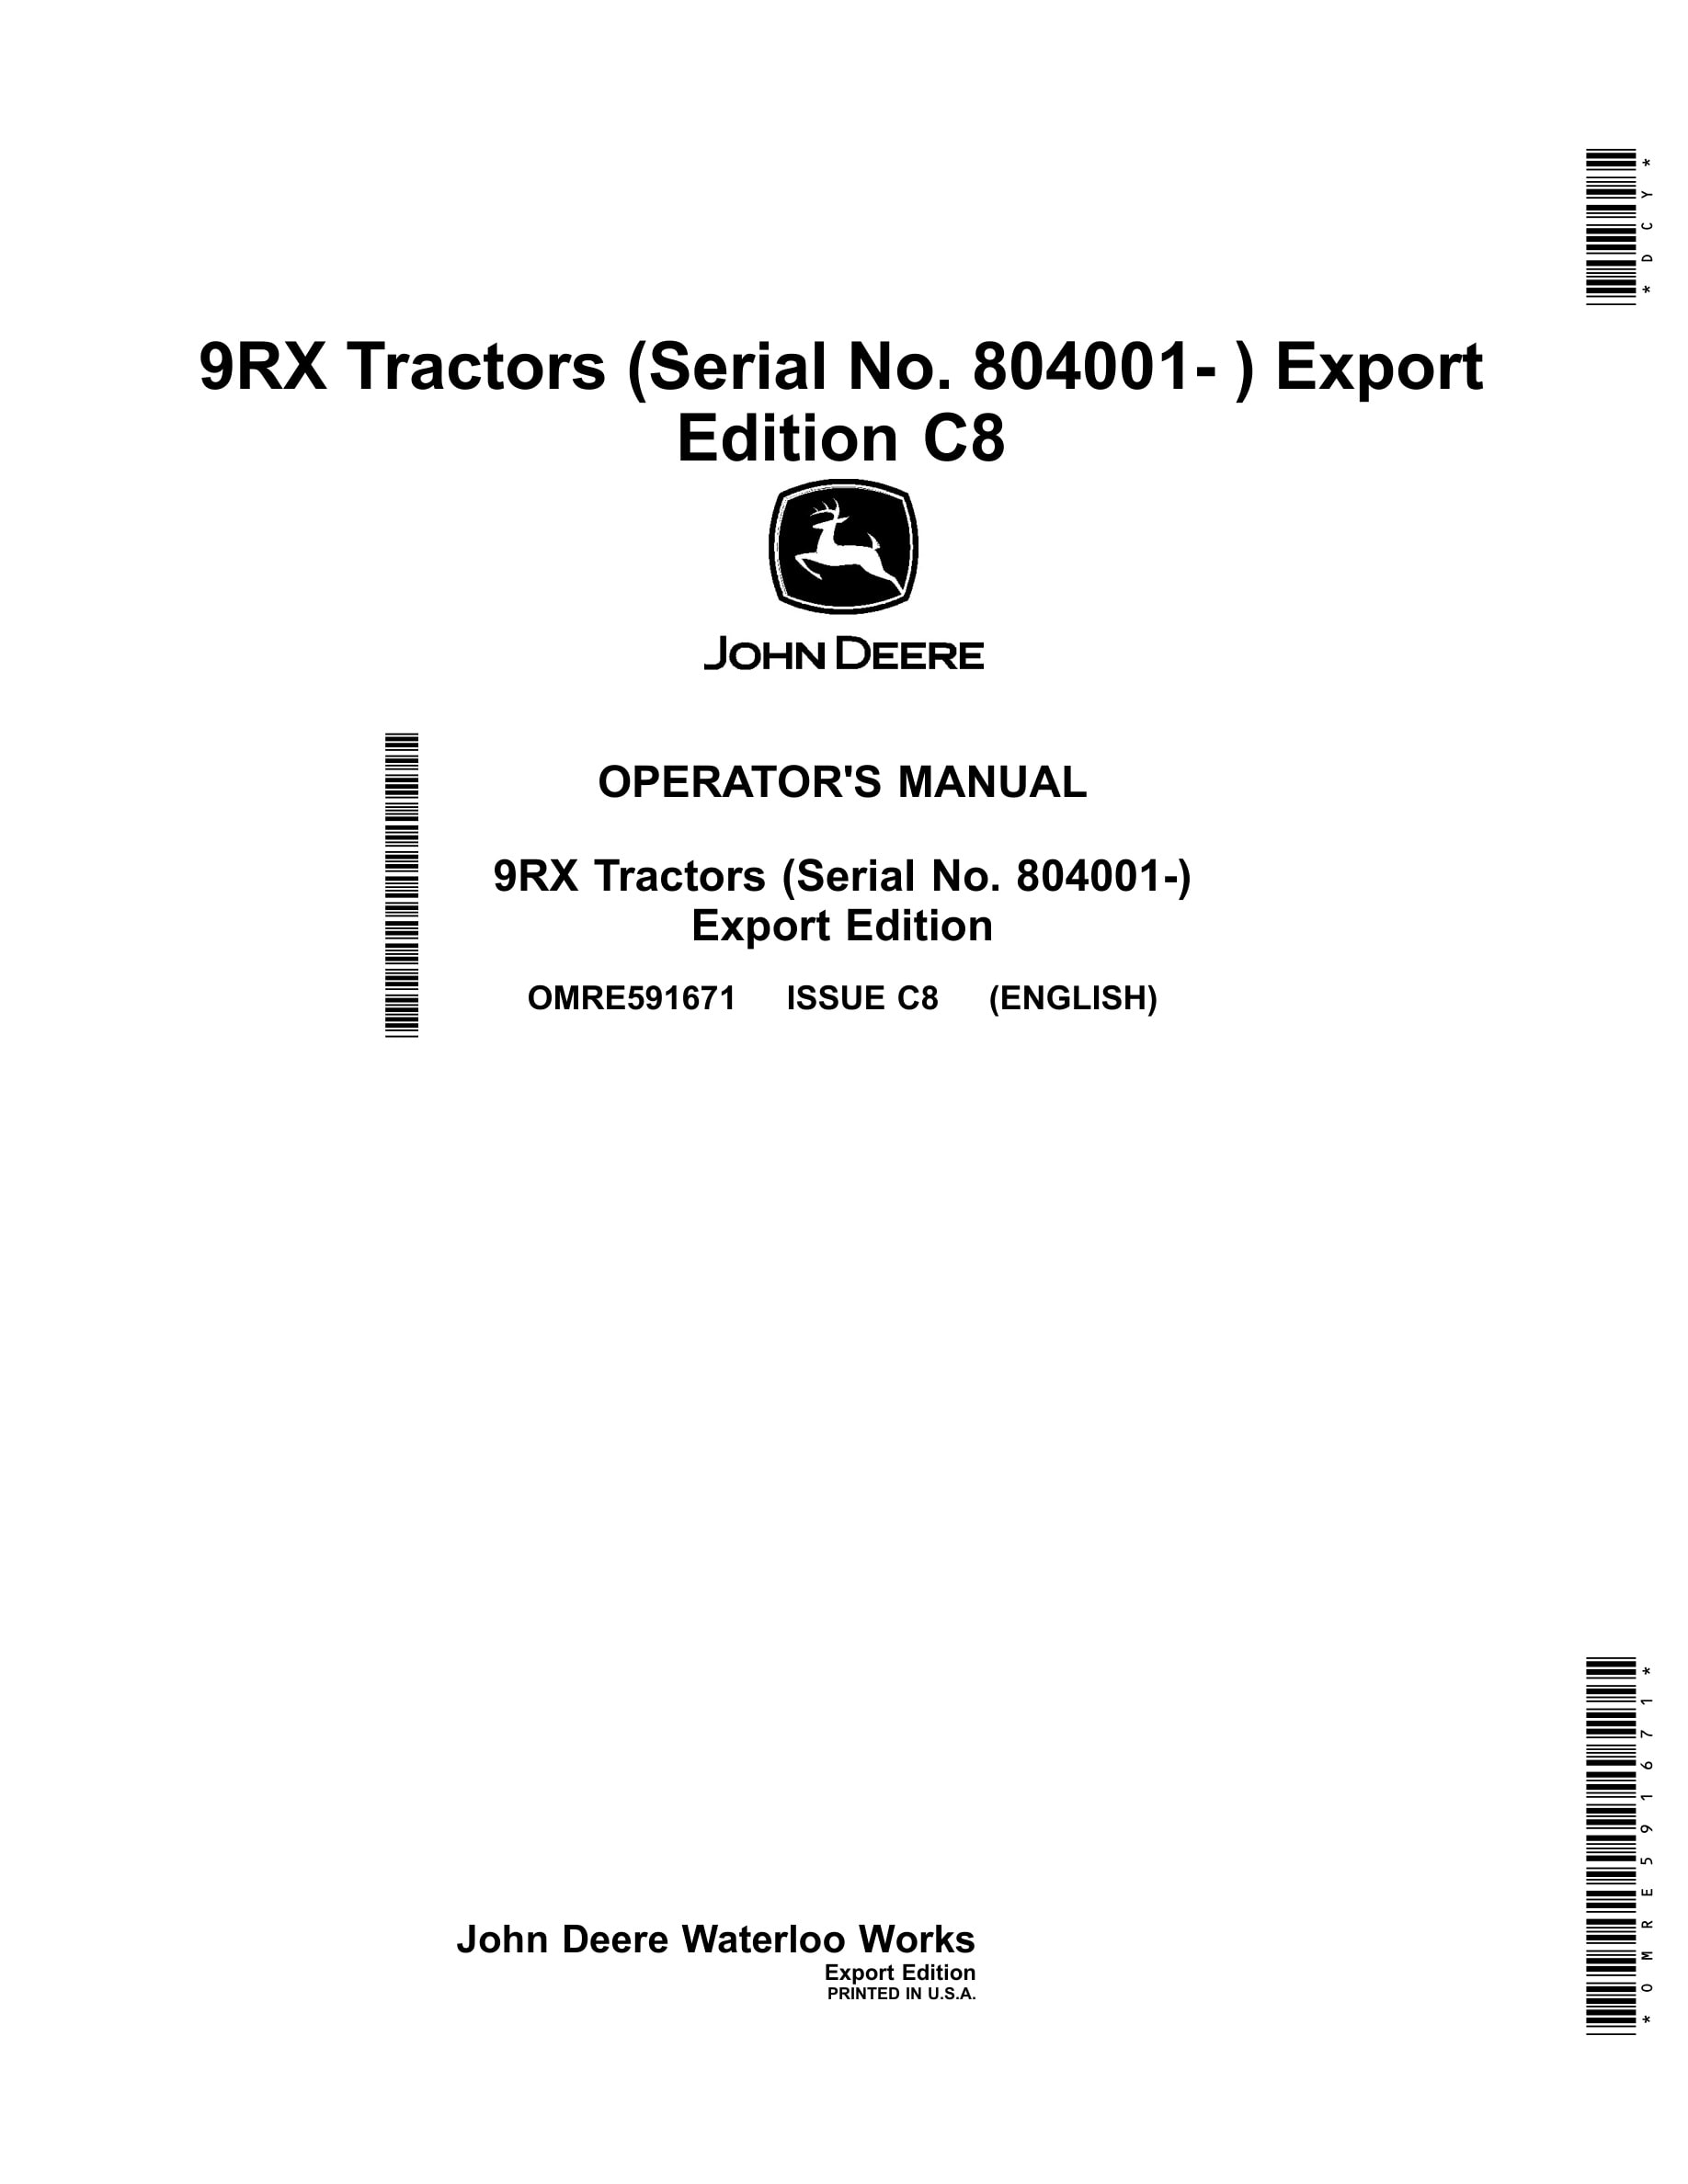 John Deere 9rx Tractors Operator Manuals OMRE591671-1